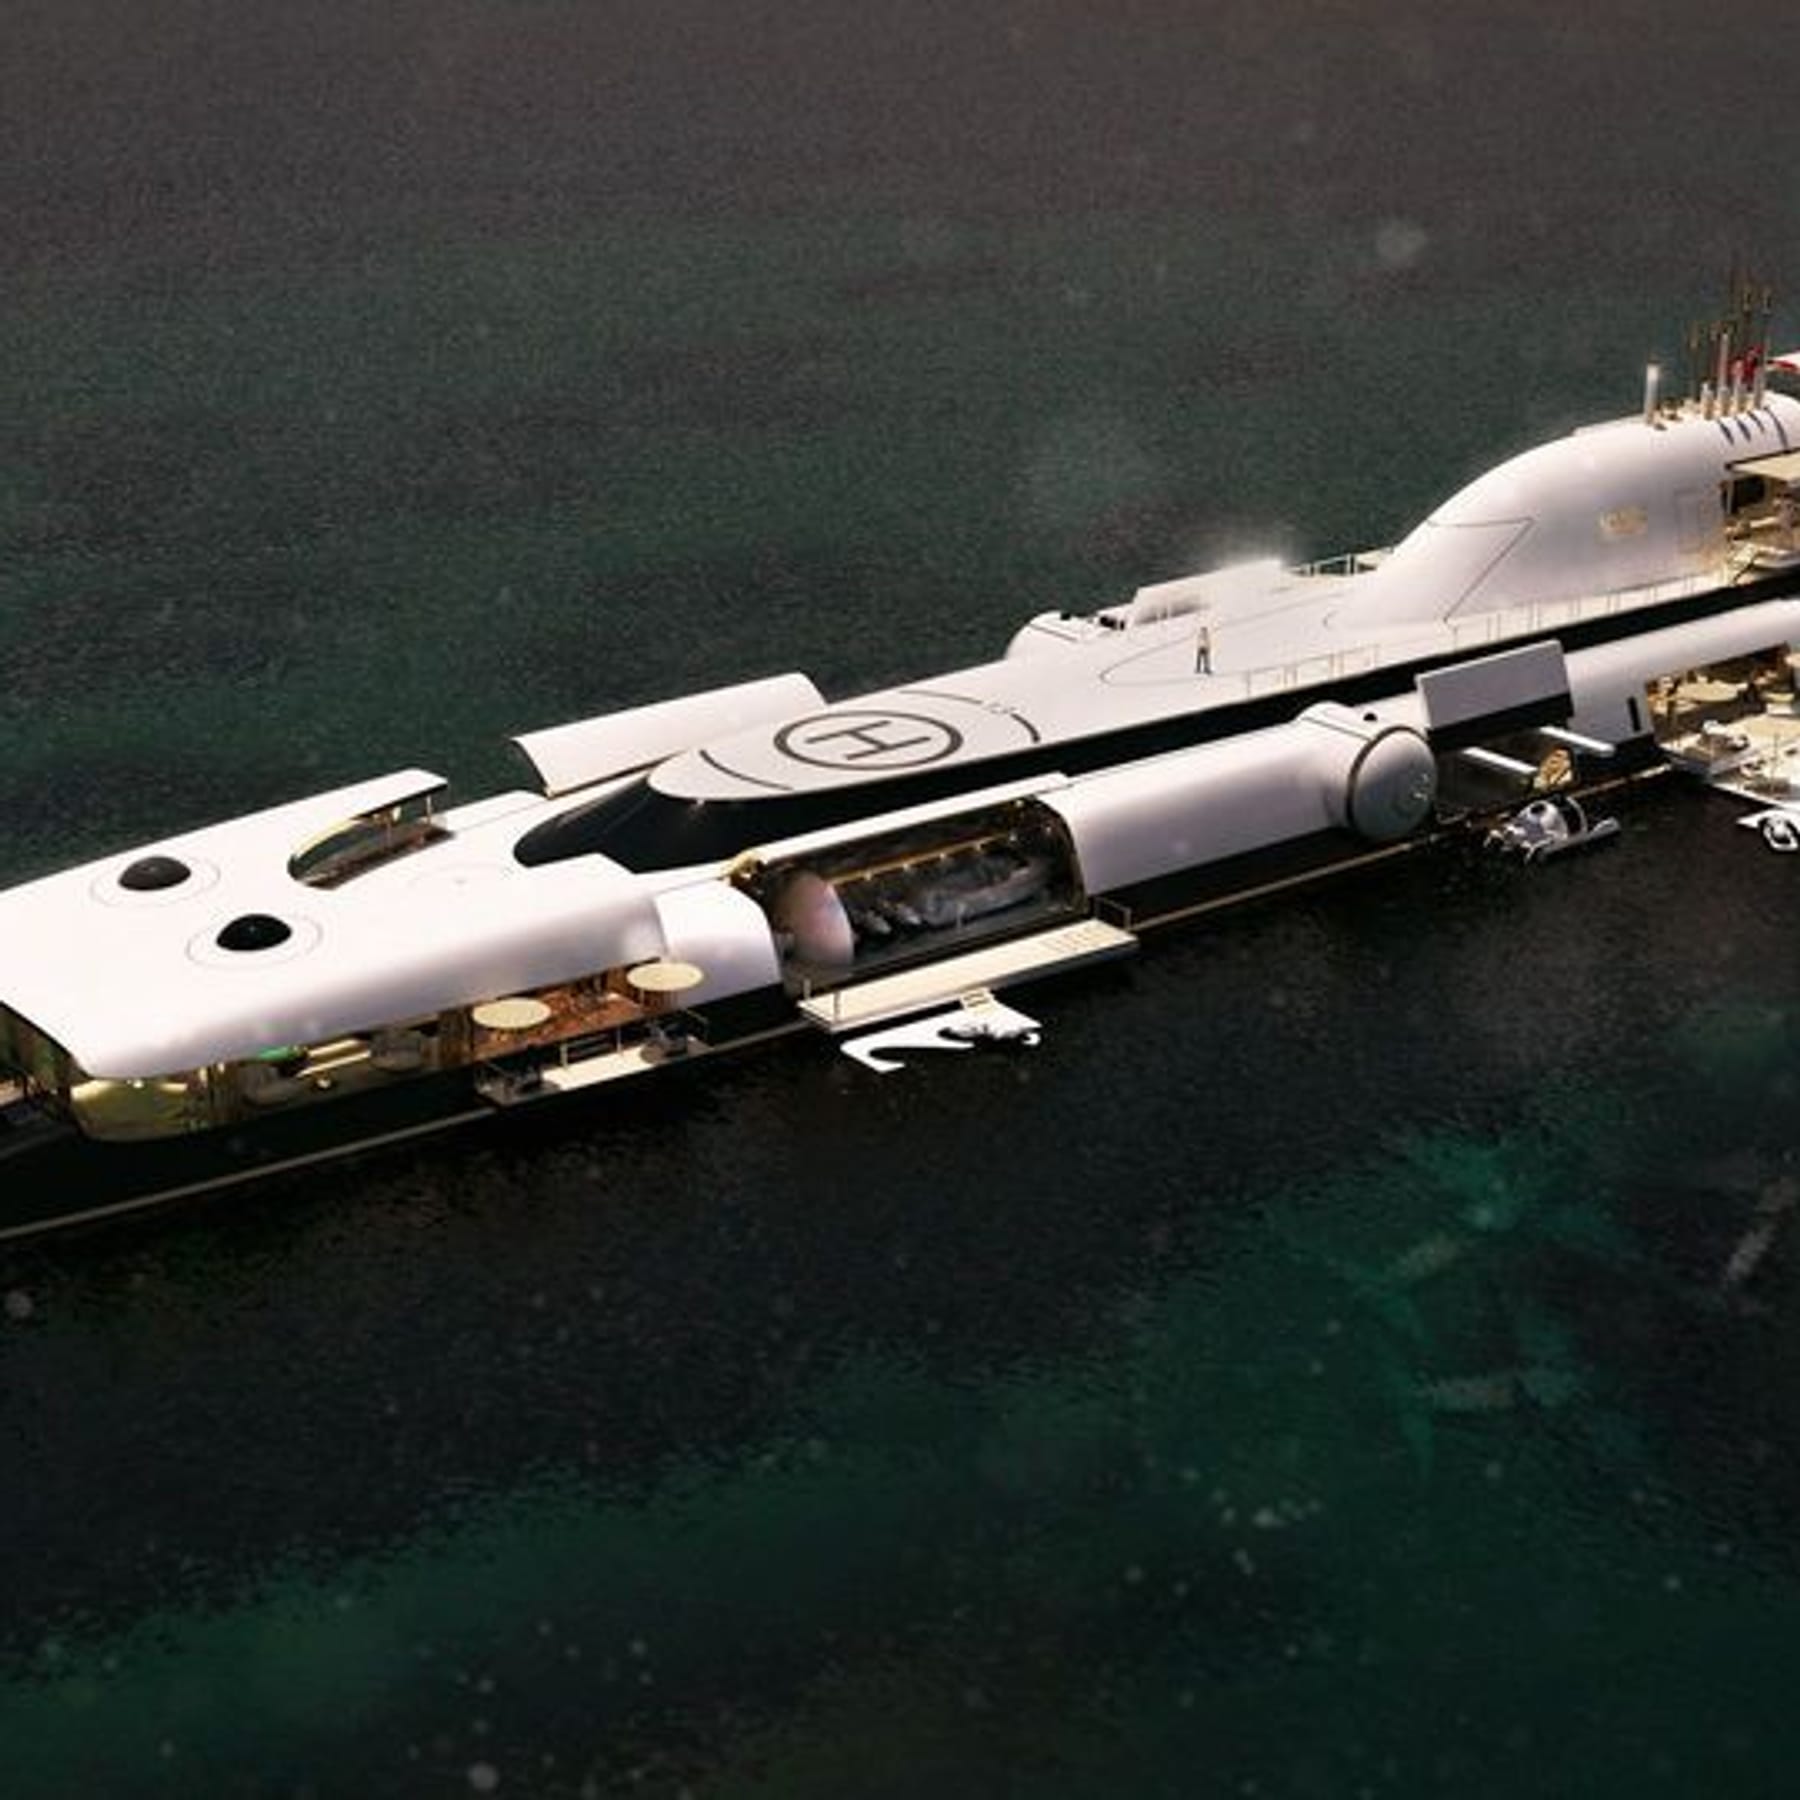 Wie bei James Bond: Luxus-U-Boot für 1,85 Milliarden Euro – Video zeigt  Pläne